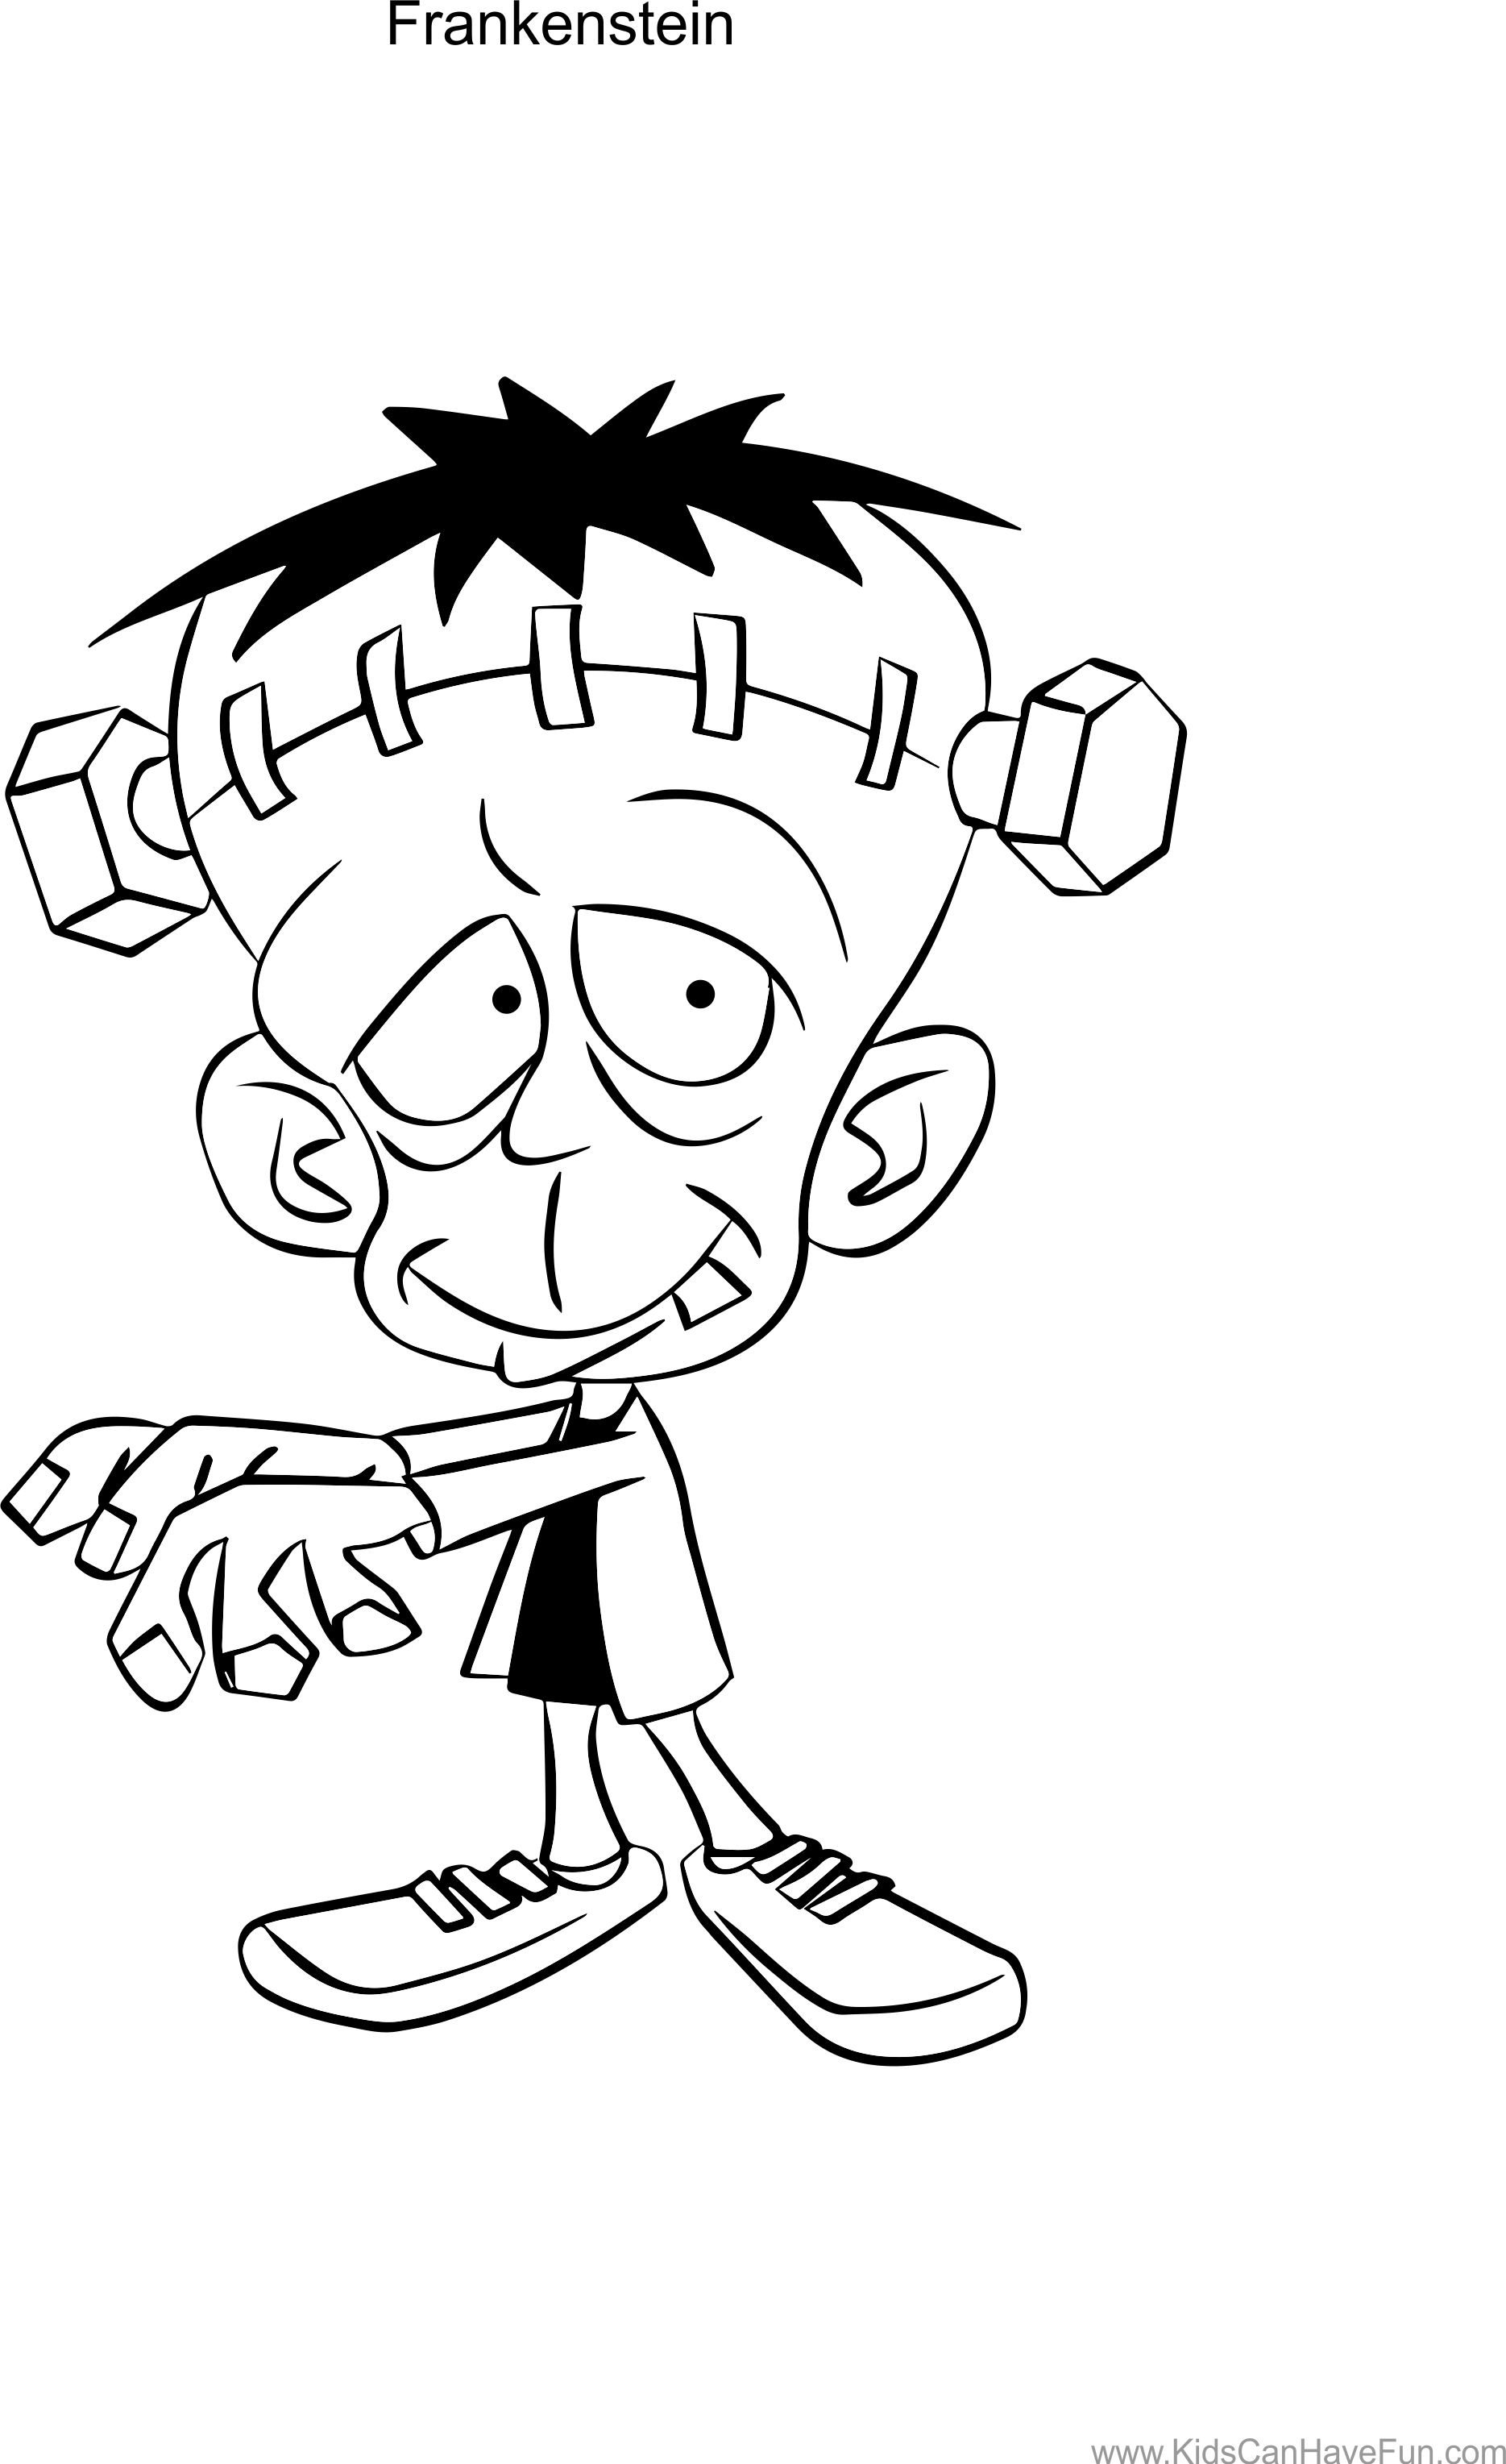 Frankenstein Drawing Cartoon at GetDrawings Free download